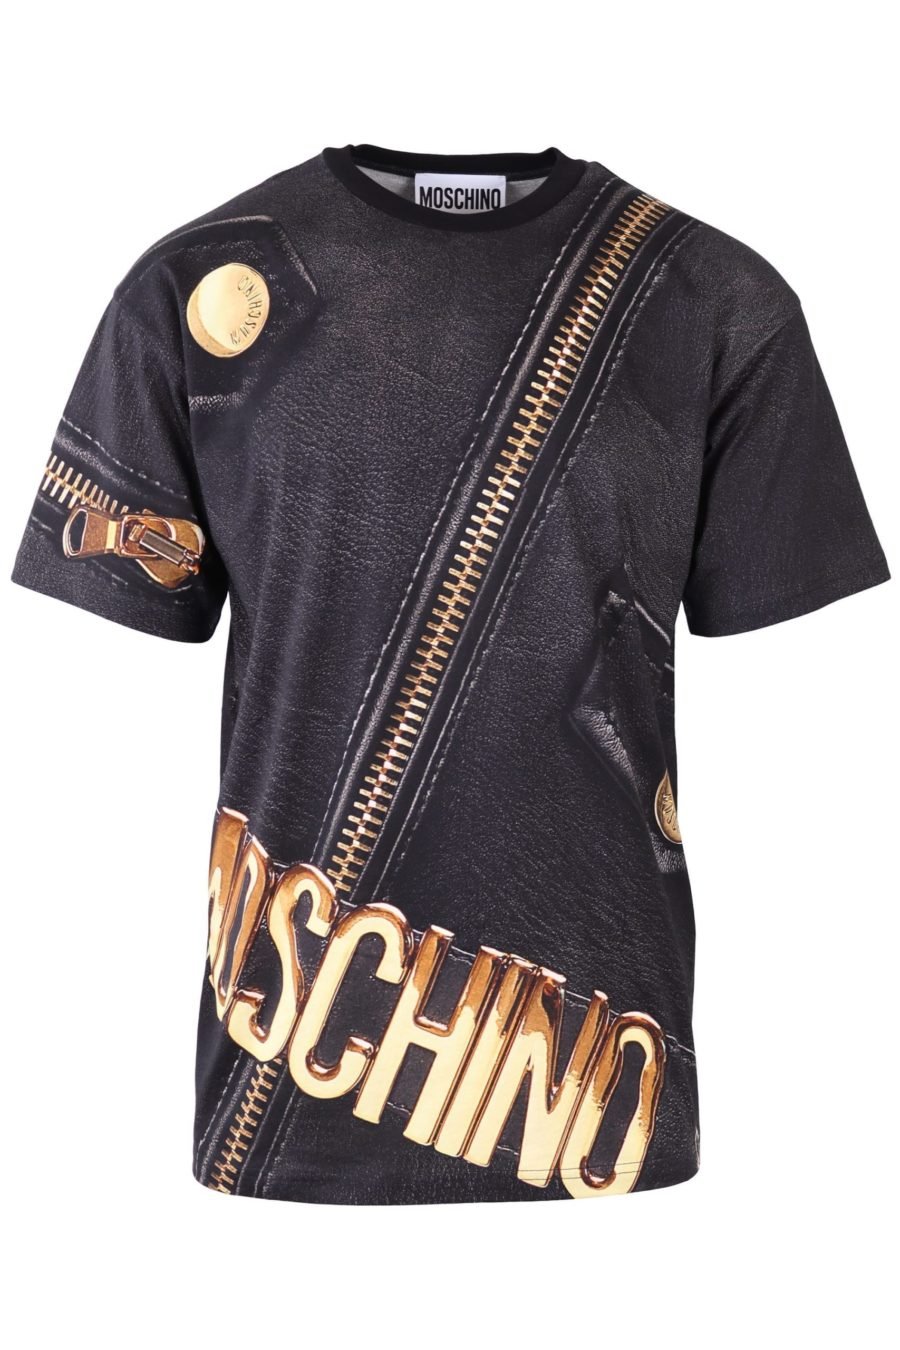 T-shirt Moschino Couture schwarz mit goldenem Reißverschluss - IMG 6513 skaliert